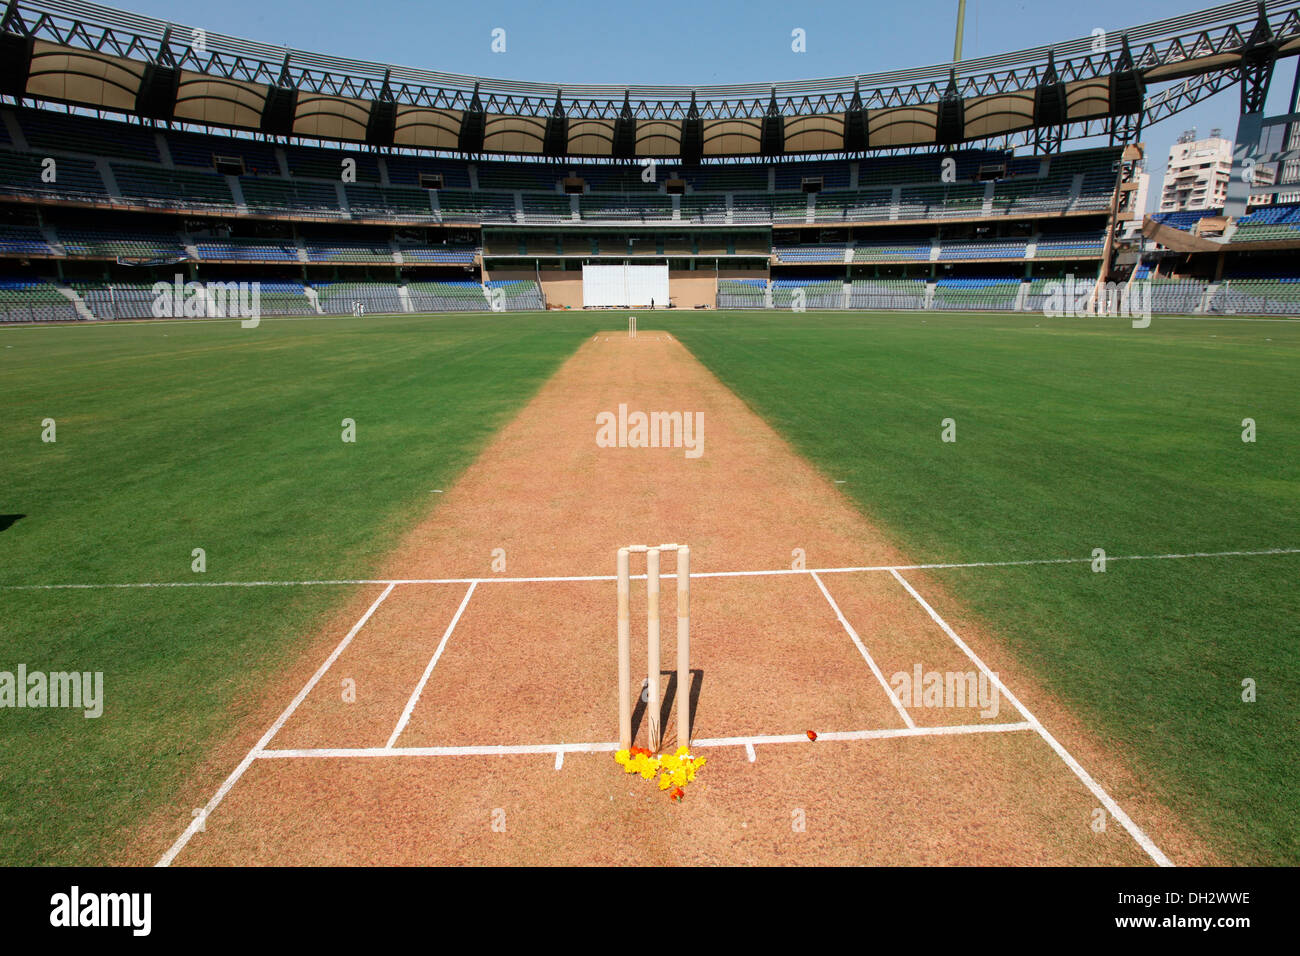 Terrain de cricket avec souches Wankhede Stadium Bombay Mumbai Maharashtra Inde Asie Banque D'Images